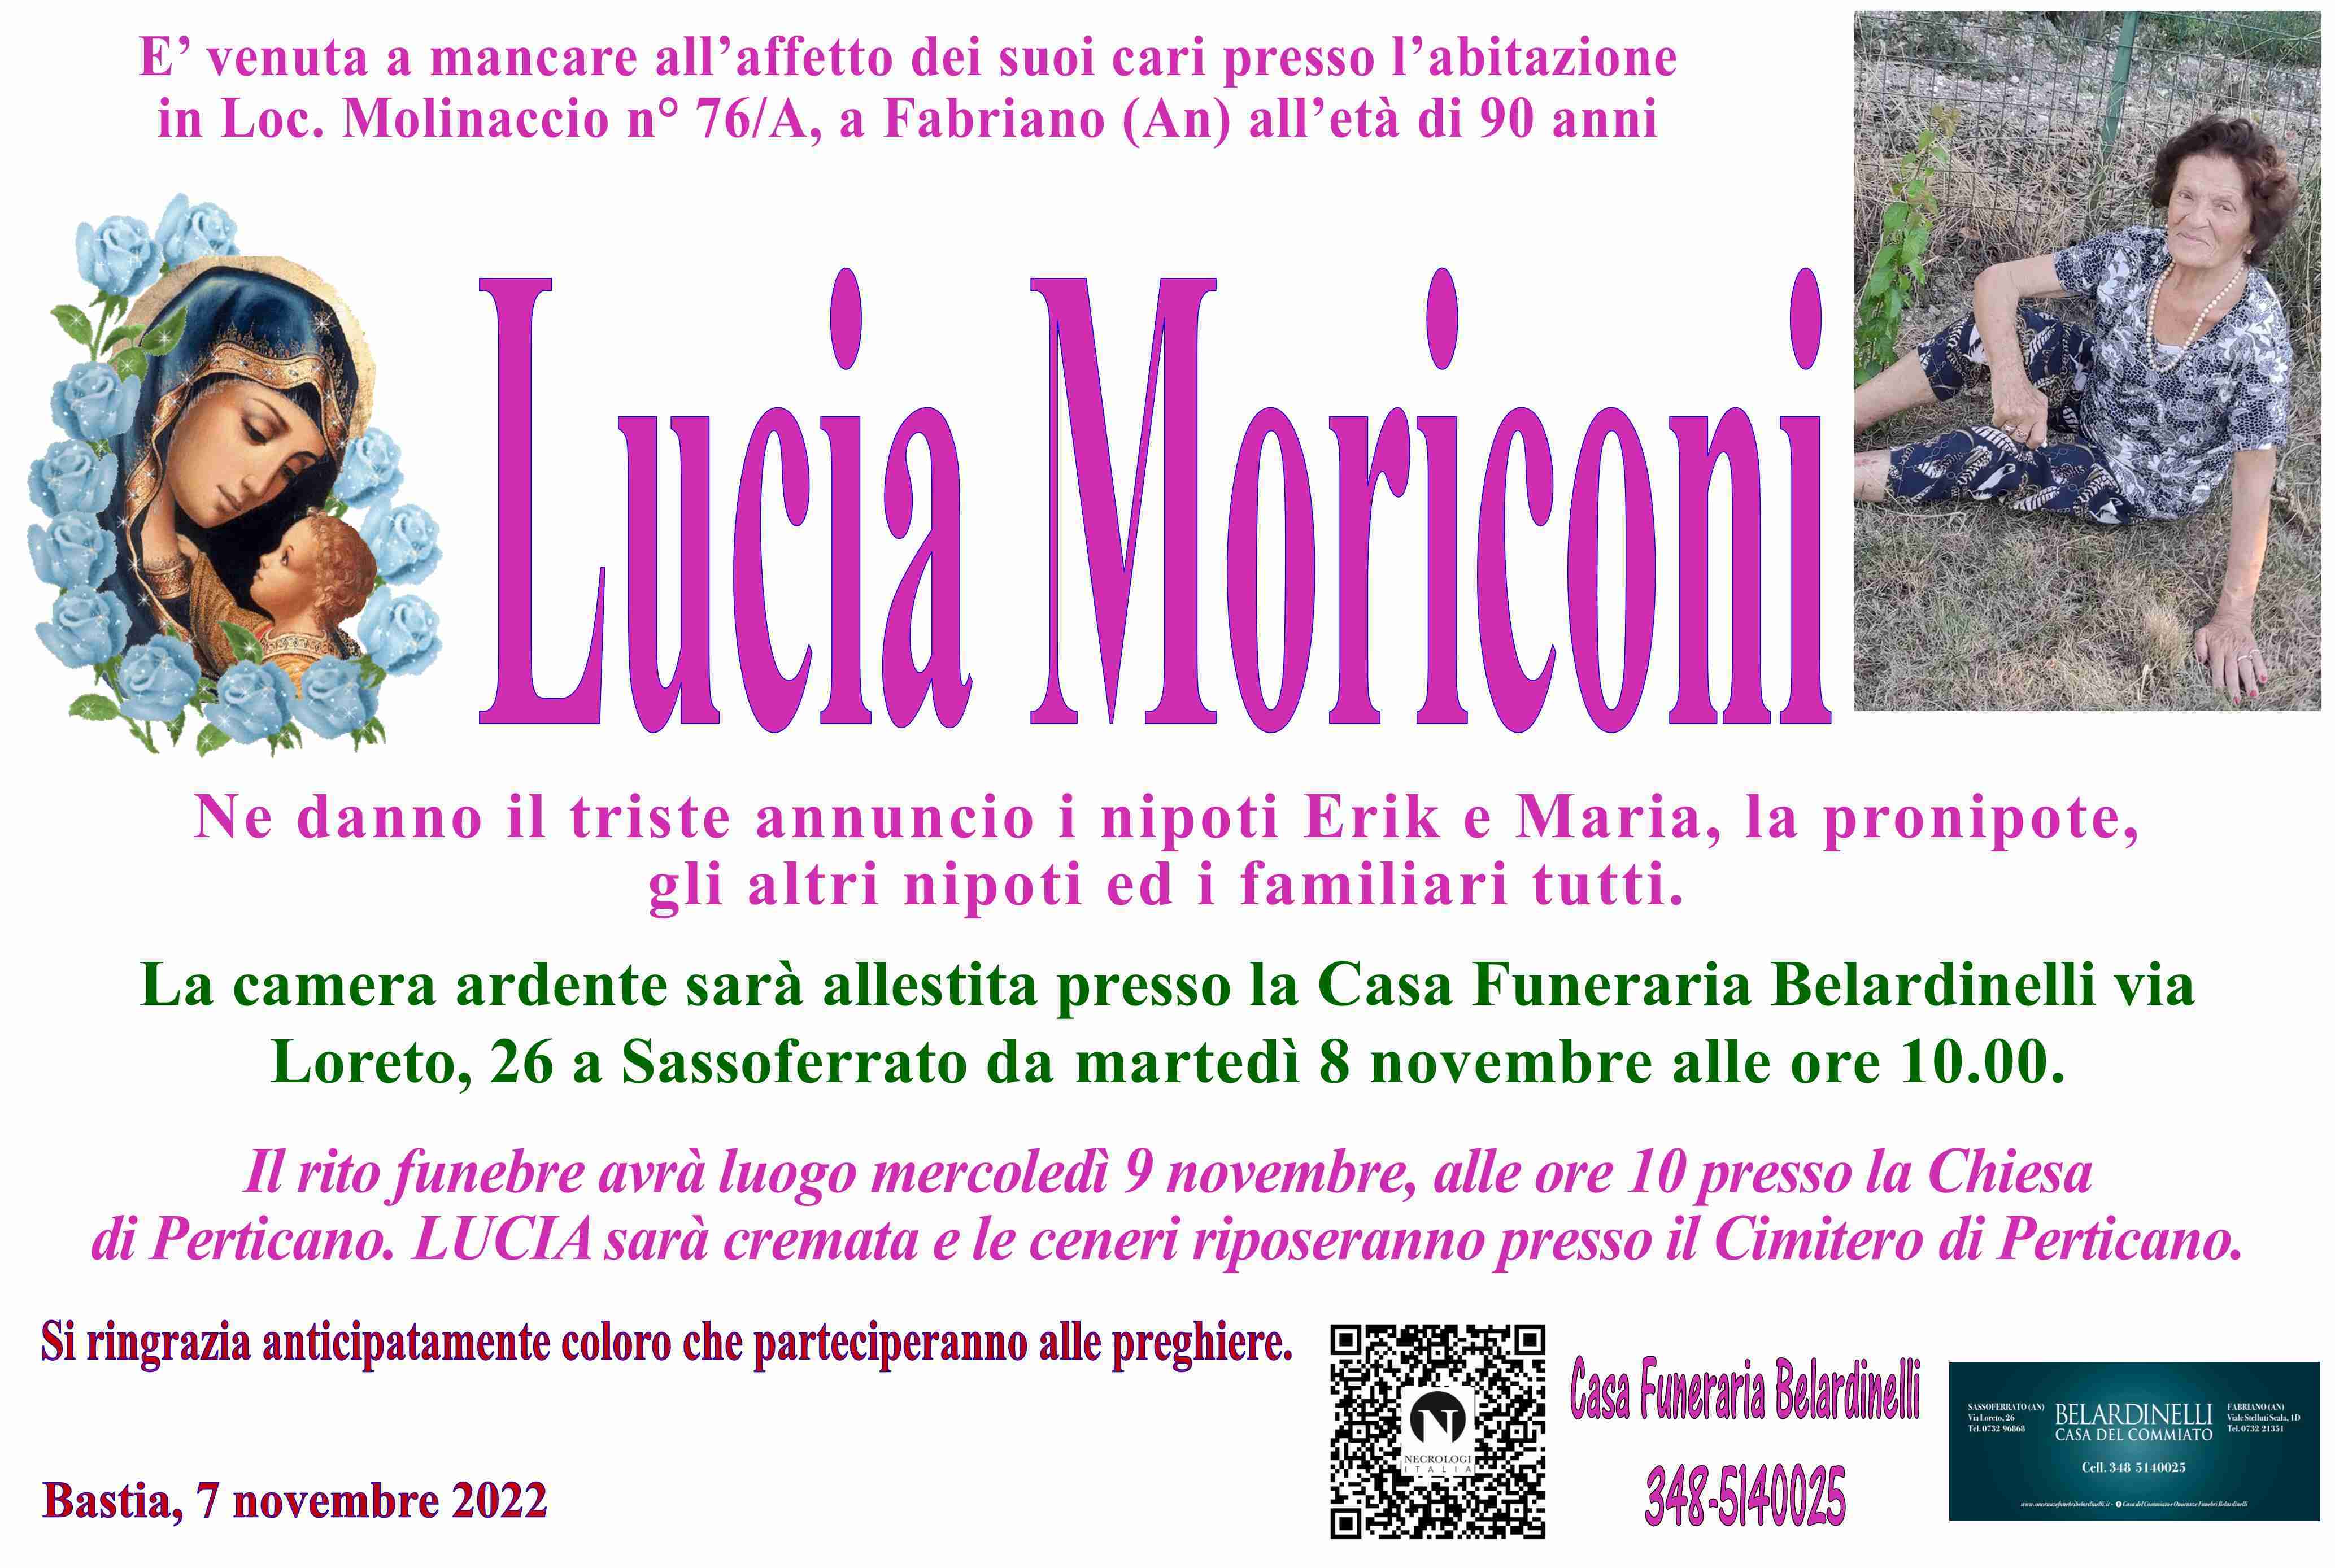 Lucia Moriconi